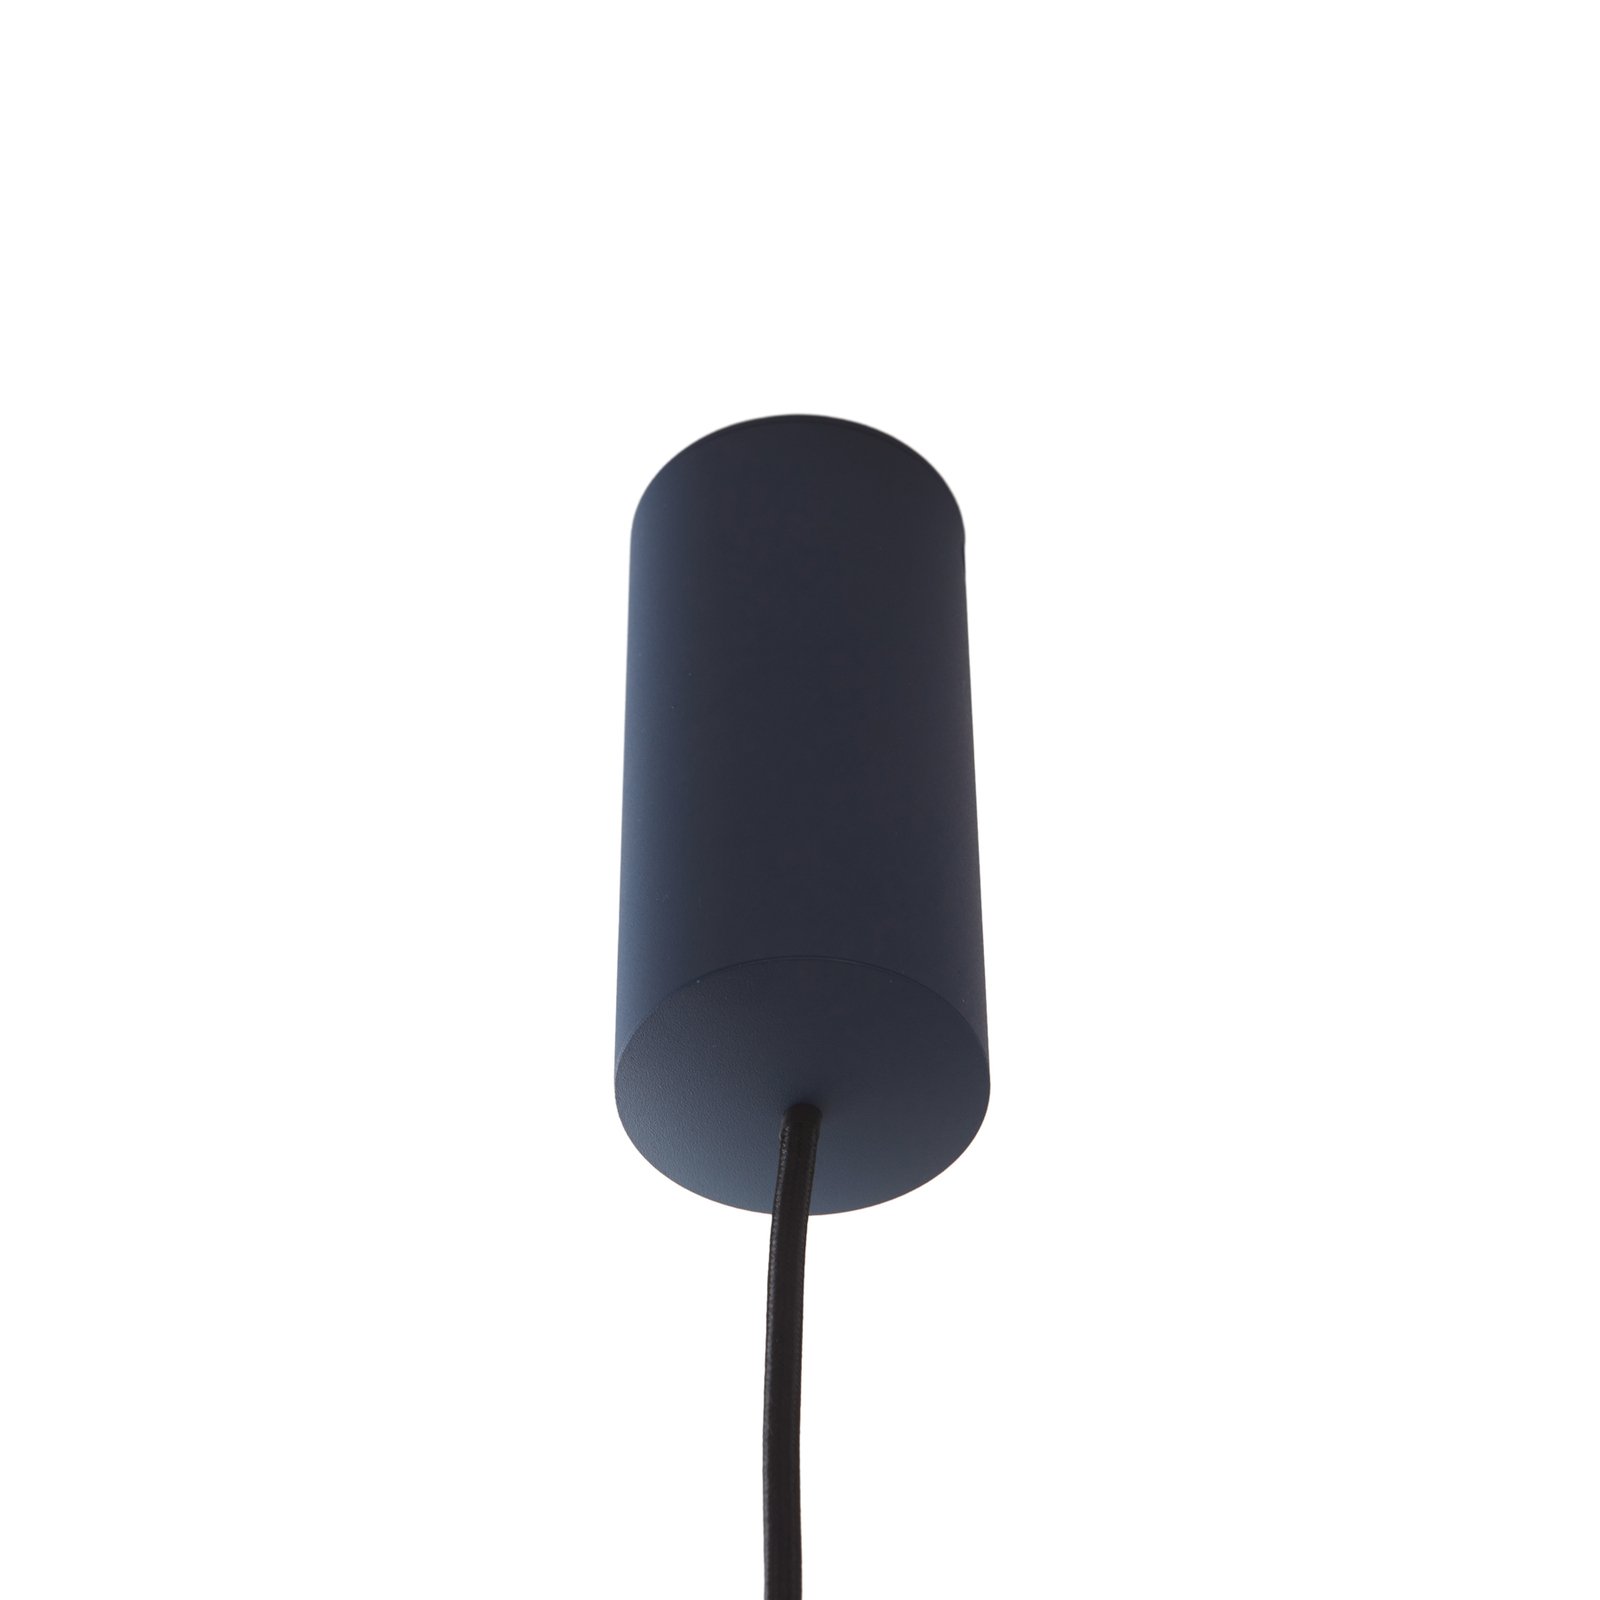 Závesné svietidlo Lucande LED Plarion, modrá farba, hliník, Ø 9 cm